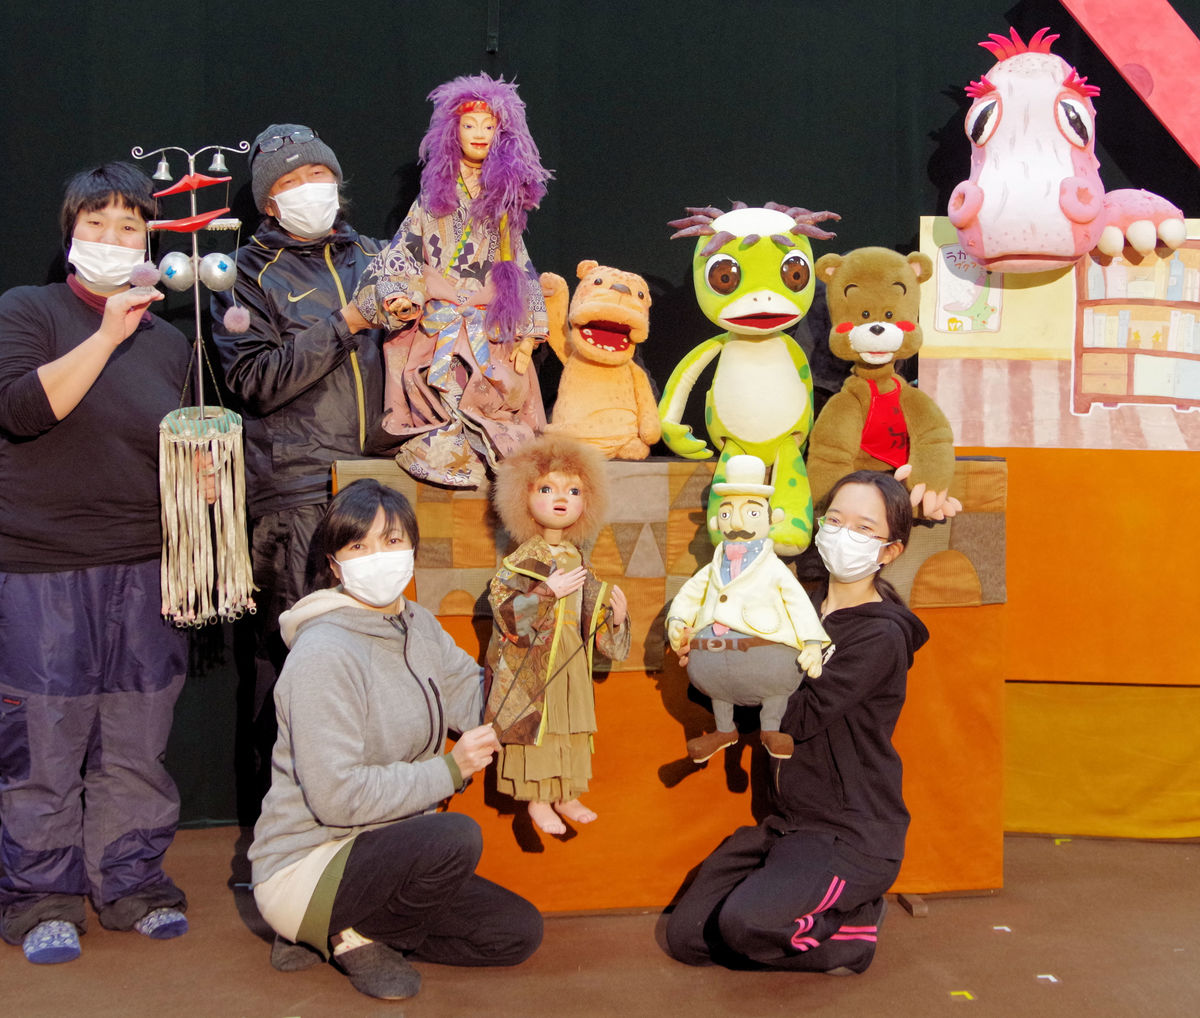 人形劇を諦めたくない コロナで公演激減 老舗の京芸が運営資金募る